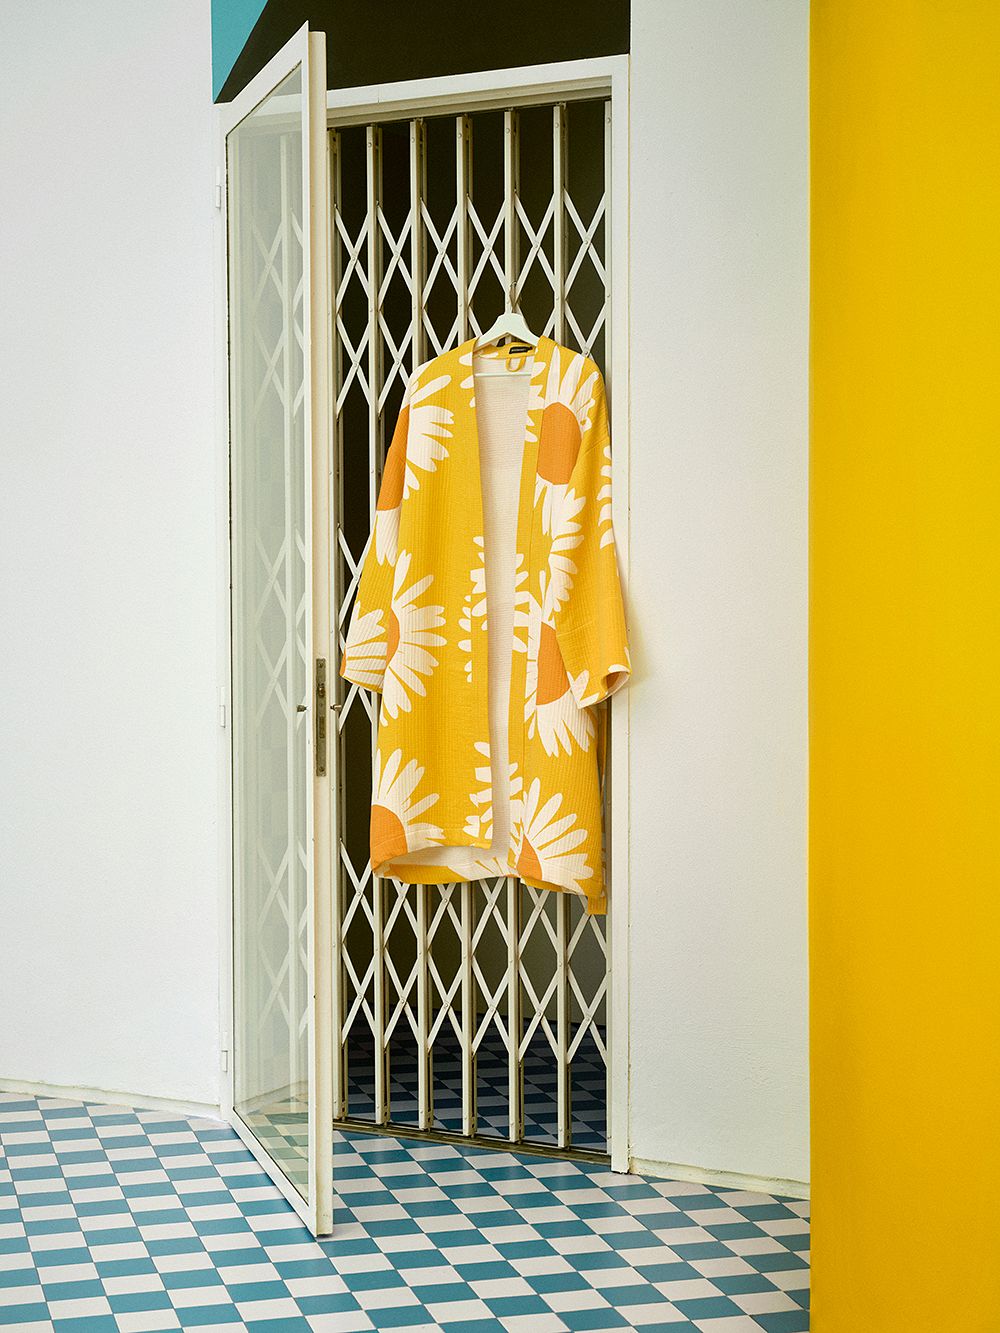 Marimekko Auringonkukka bathrobe in yellow